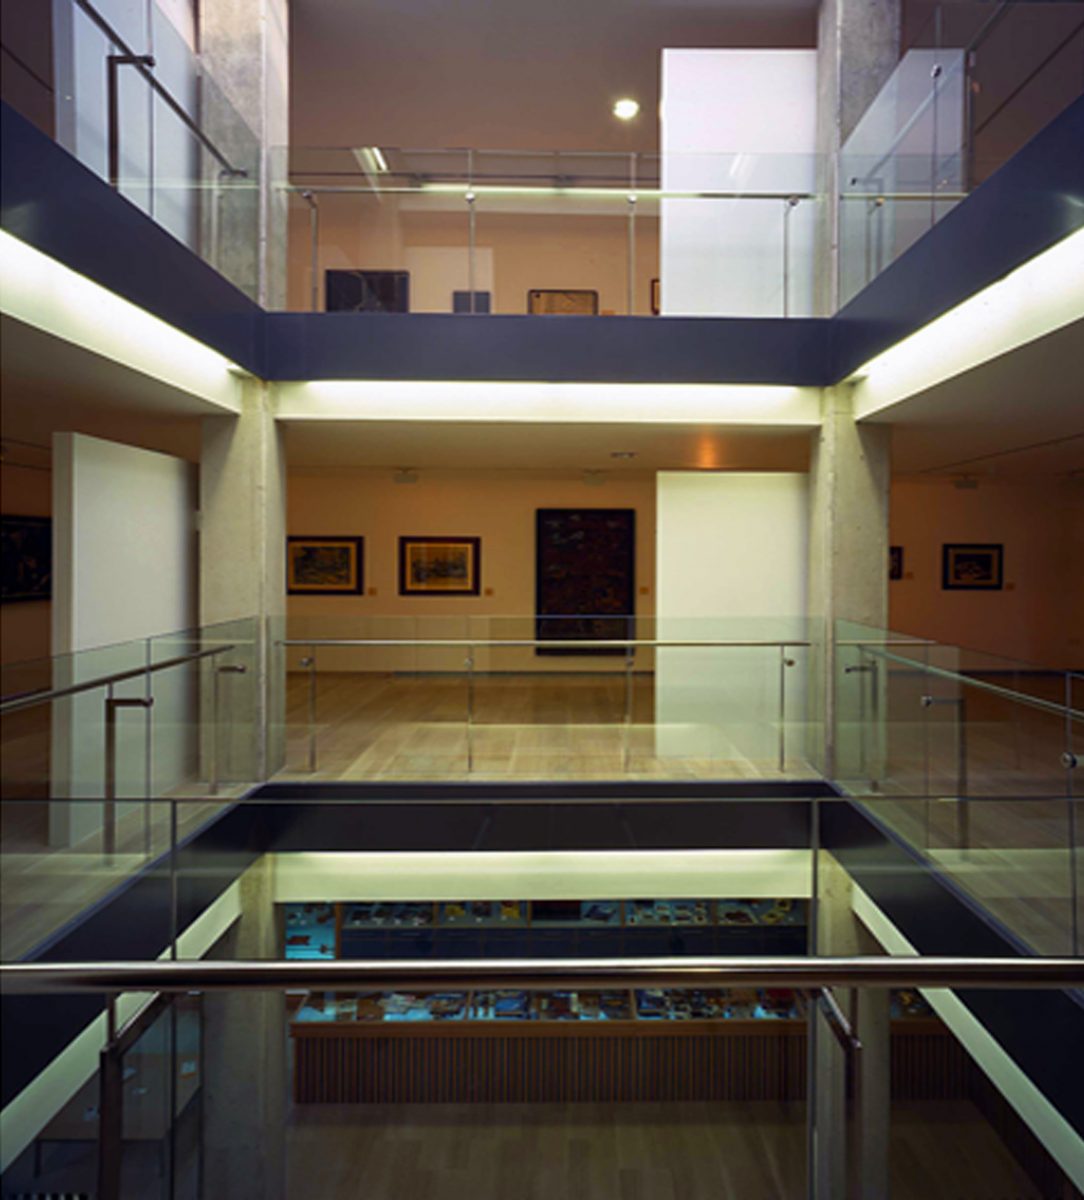 Vista interior del museo con barandillas de vidrio